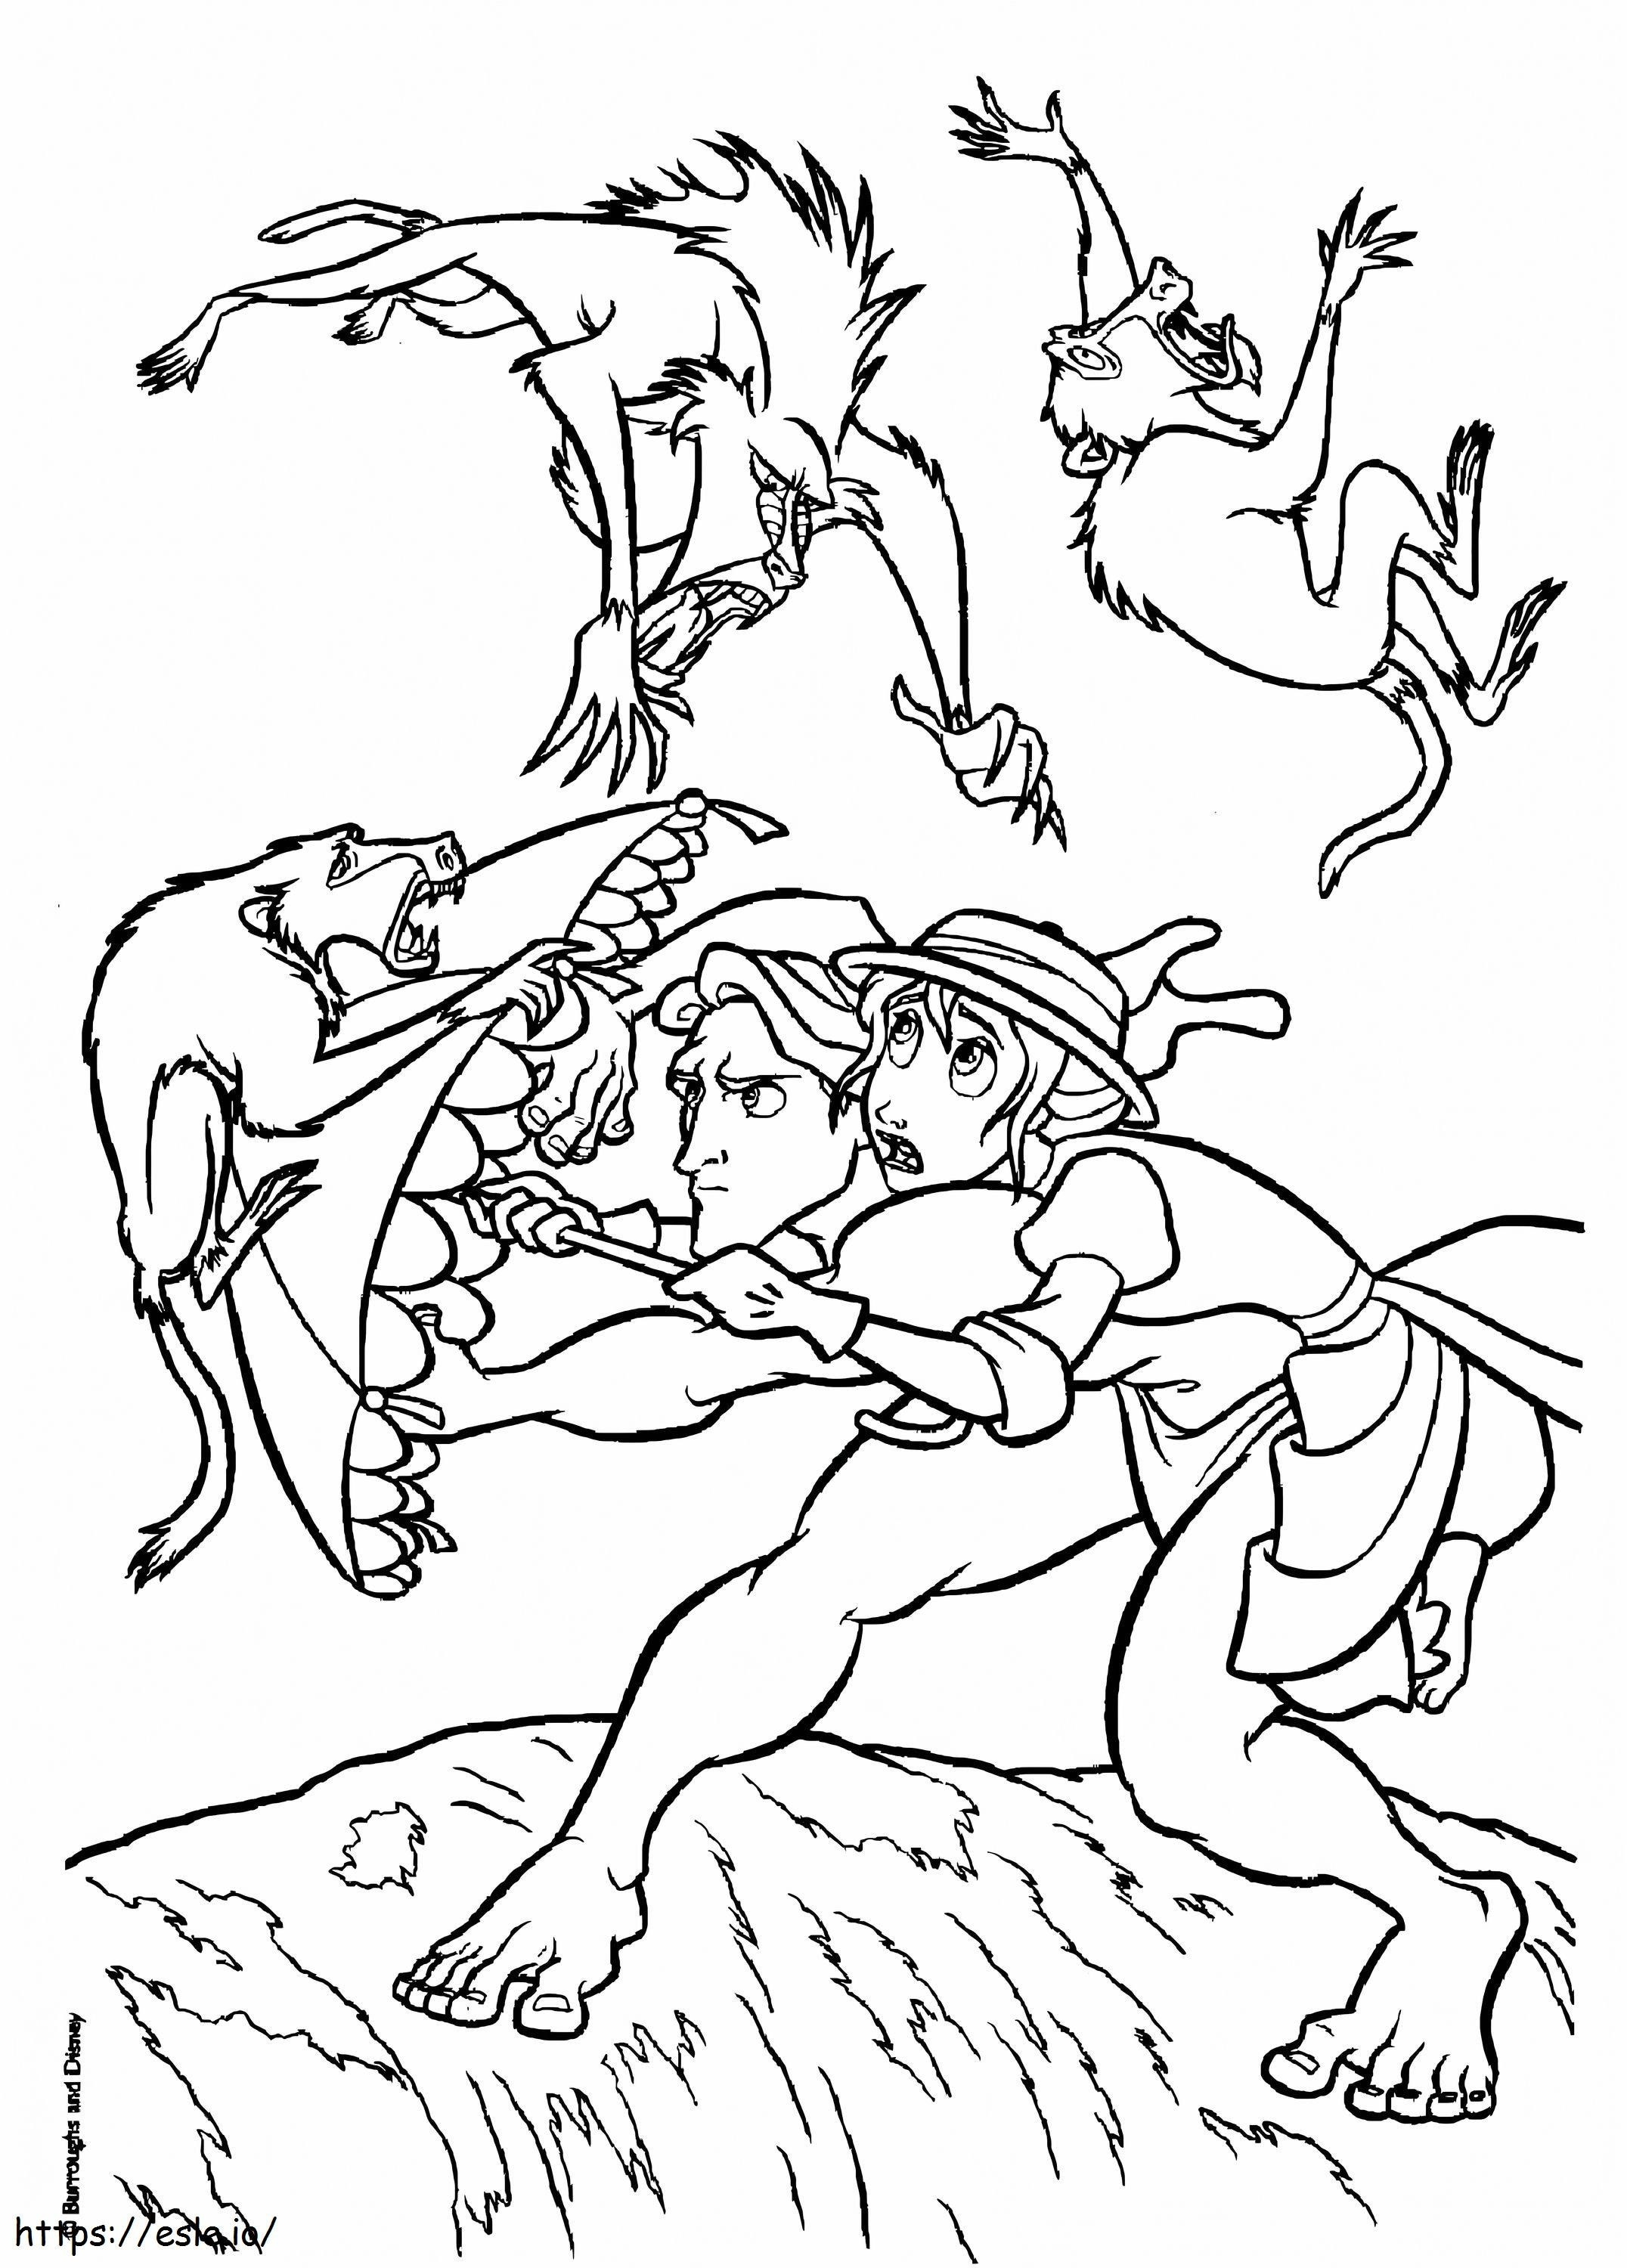 Tarzan e Jane contro gli animali da colorare